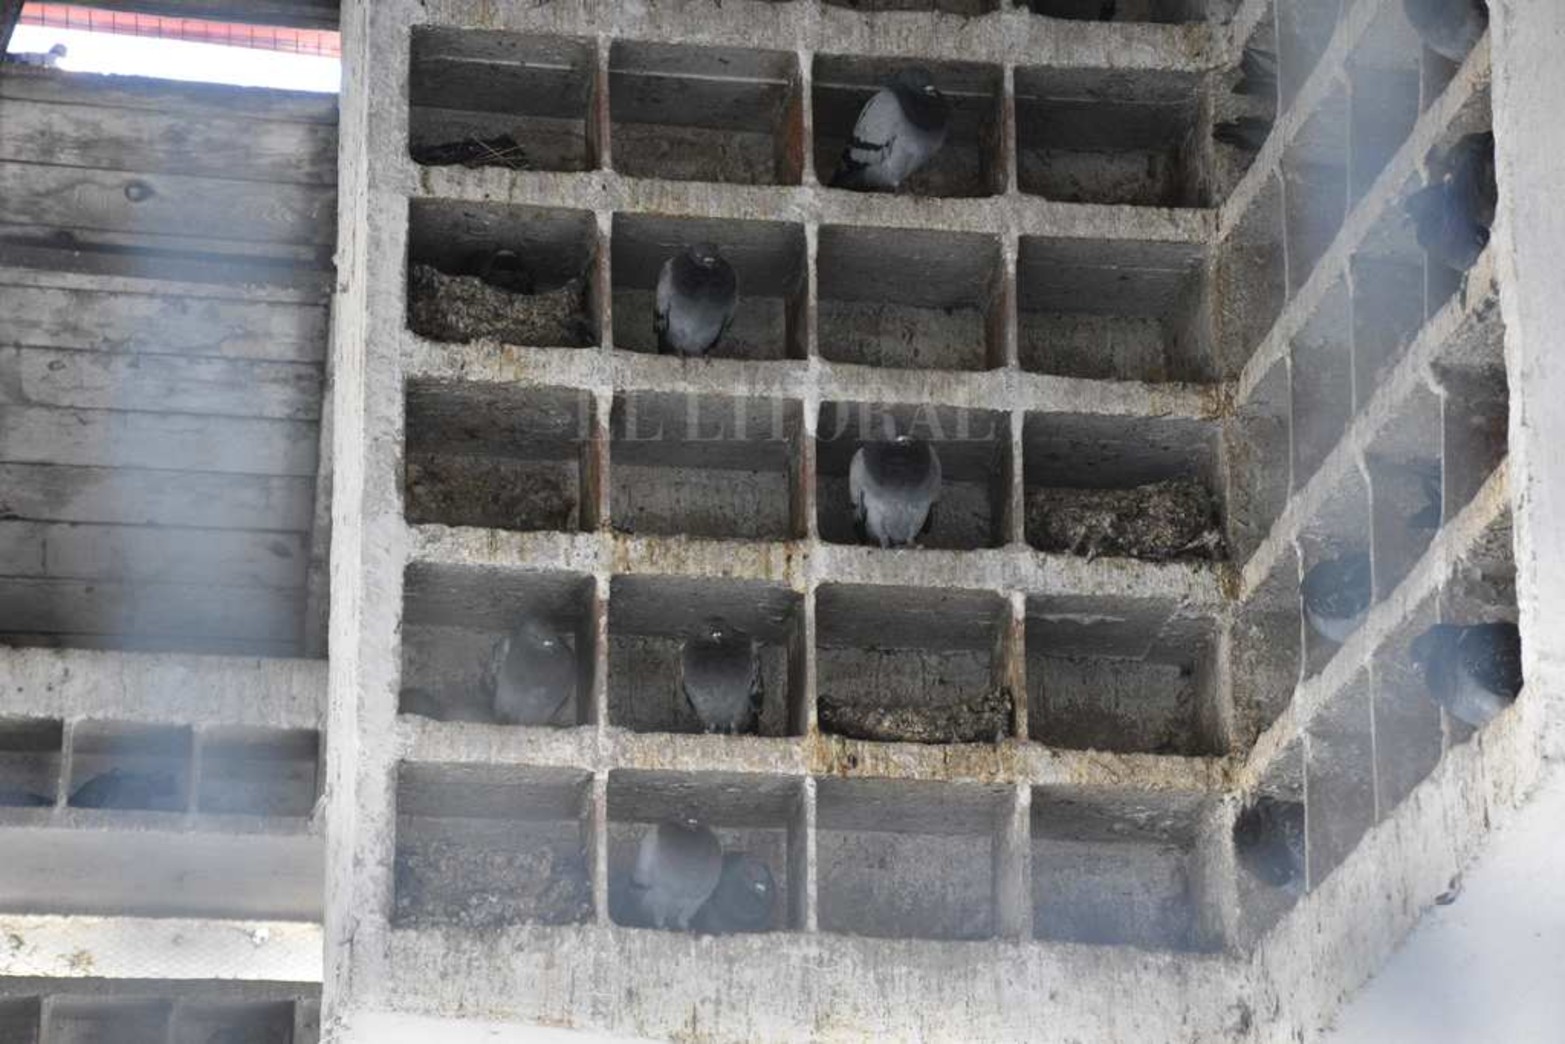 El secretario de Ambiente de la Municipalidad, Edgardo Seguro, contó que van a tapar nidos para que dejen de producir palomas o busquen otros lugares para hacerlo.